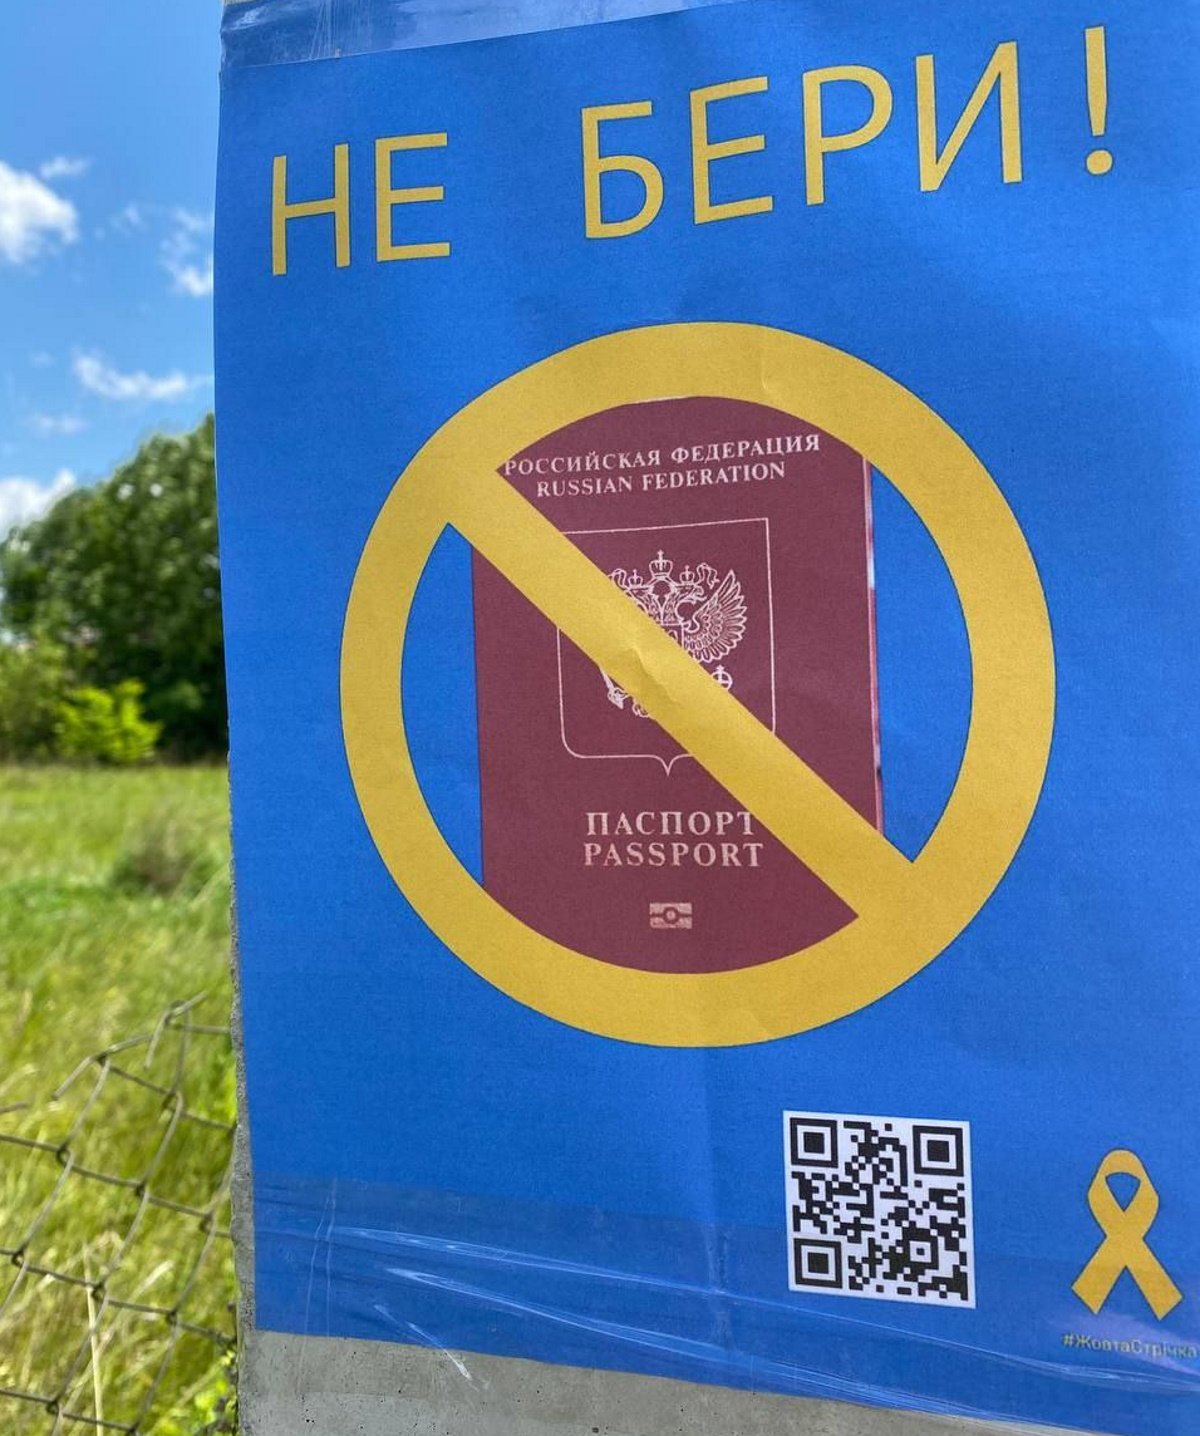 La resistencia ucraniana de Jersón utiliza el lazo amarillo como símbolo contra la ocupación rusa